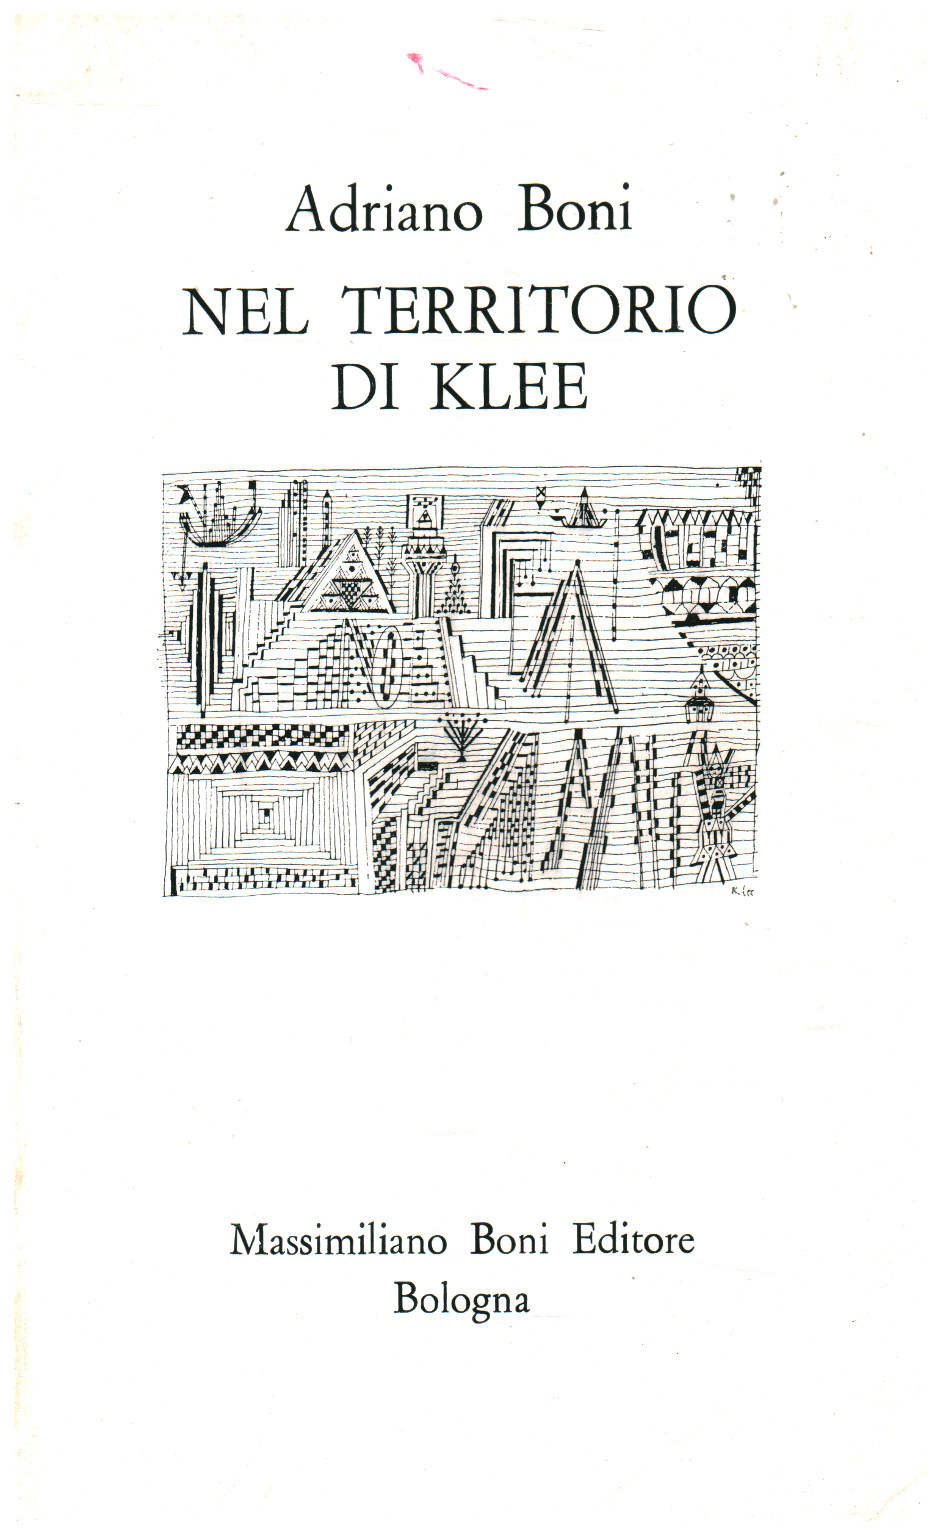 Nel territorio di Klee, s.a.